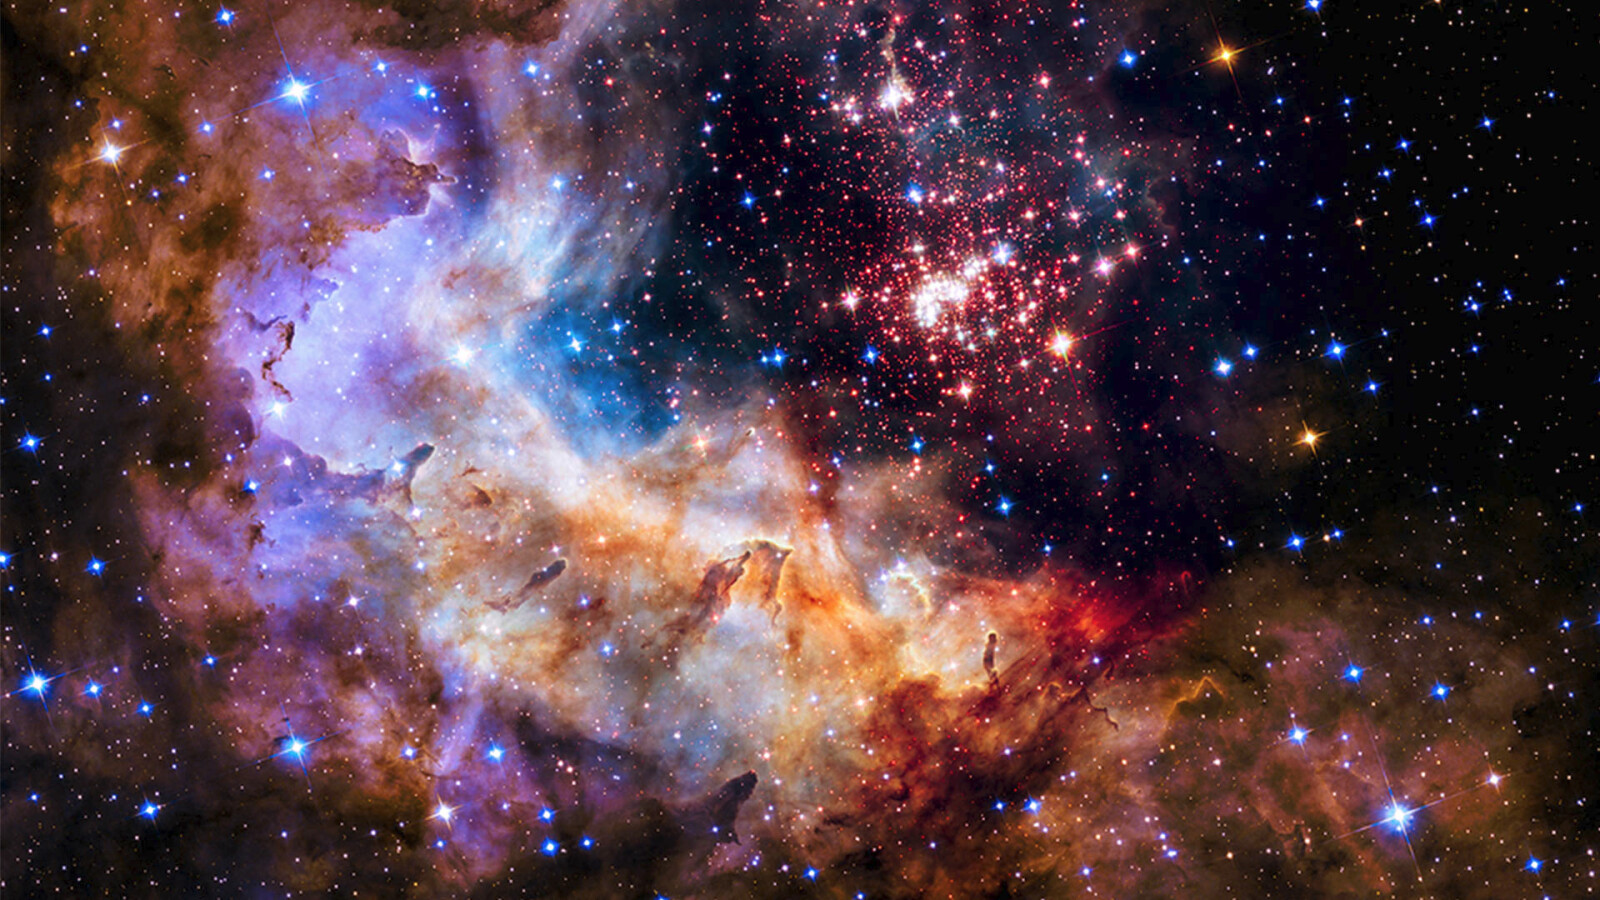 25 Jahre Hubble: Das Weltall in Bildern und Videos - NETZWELT1600 x 900